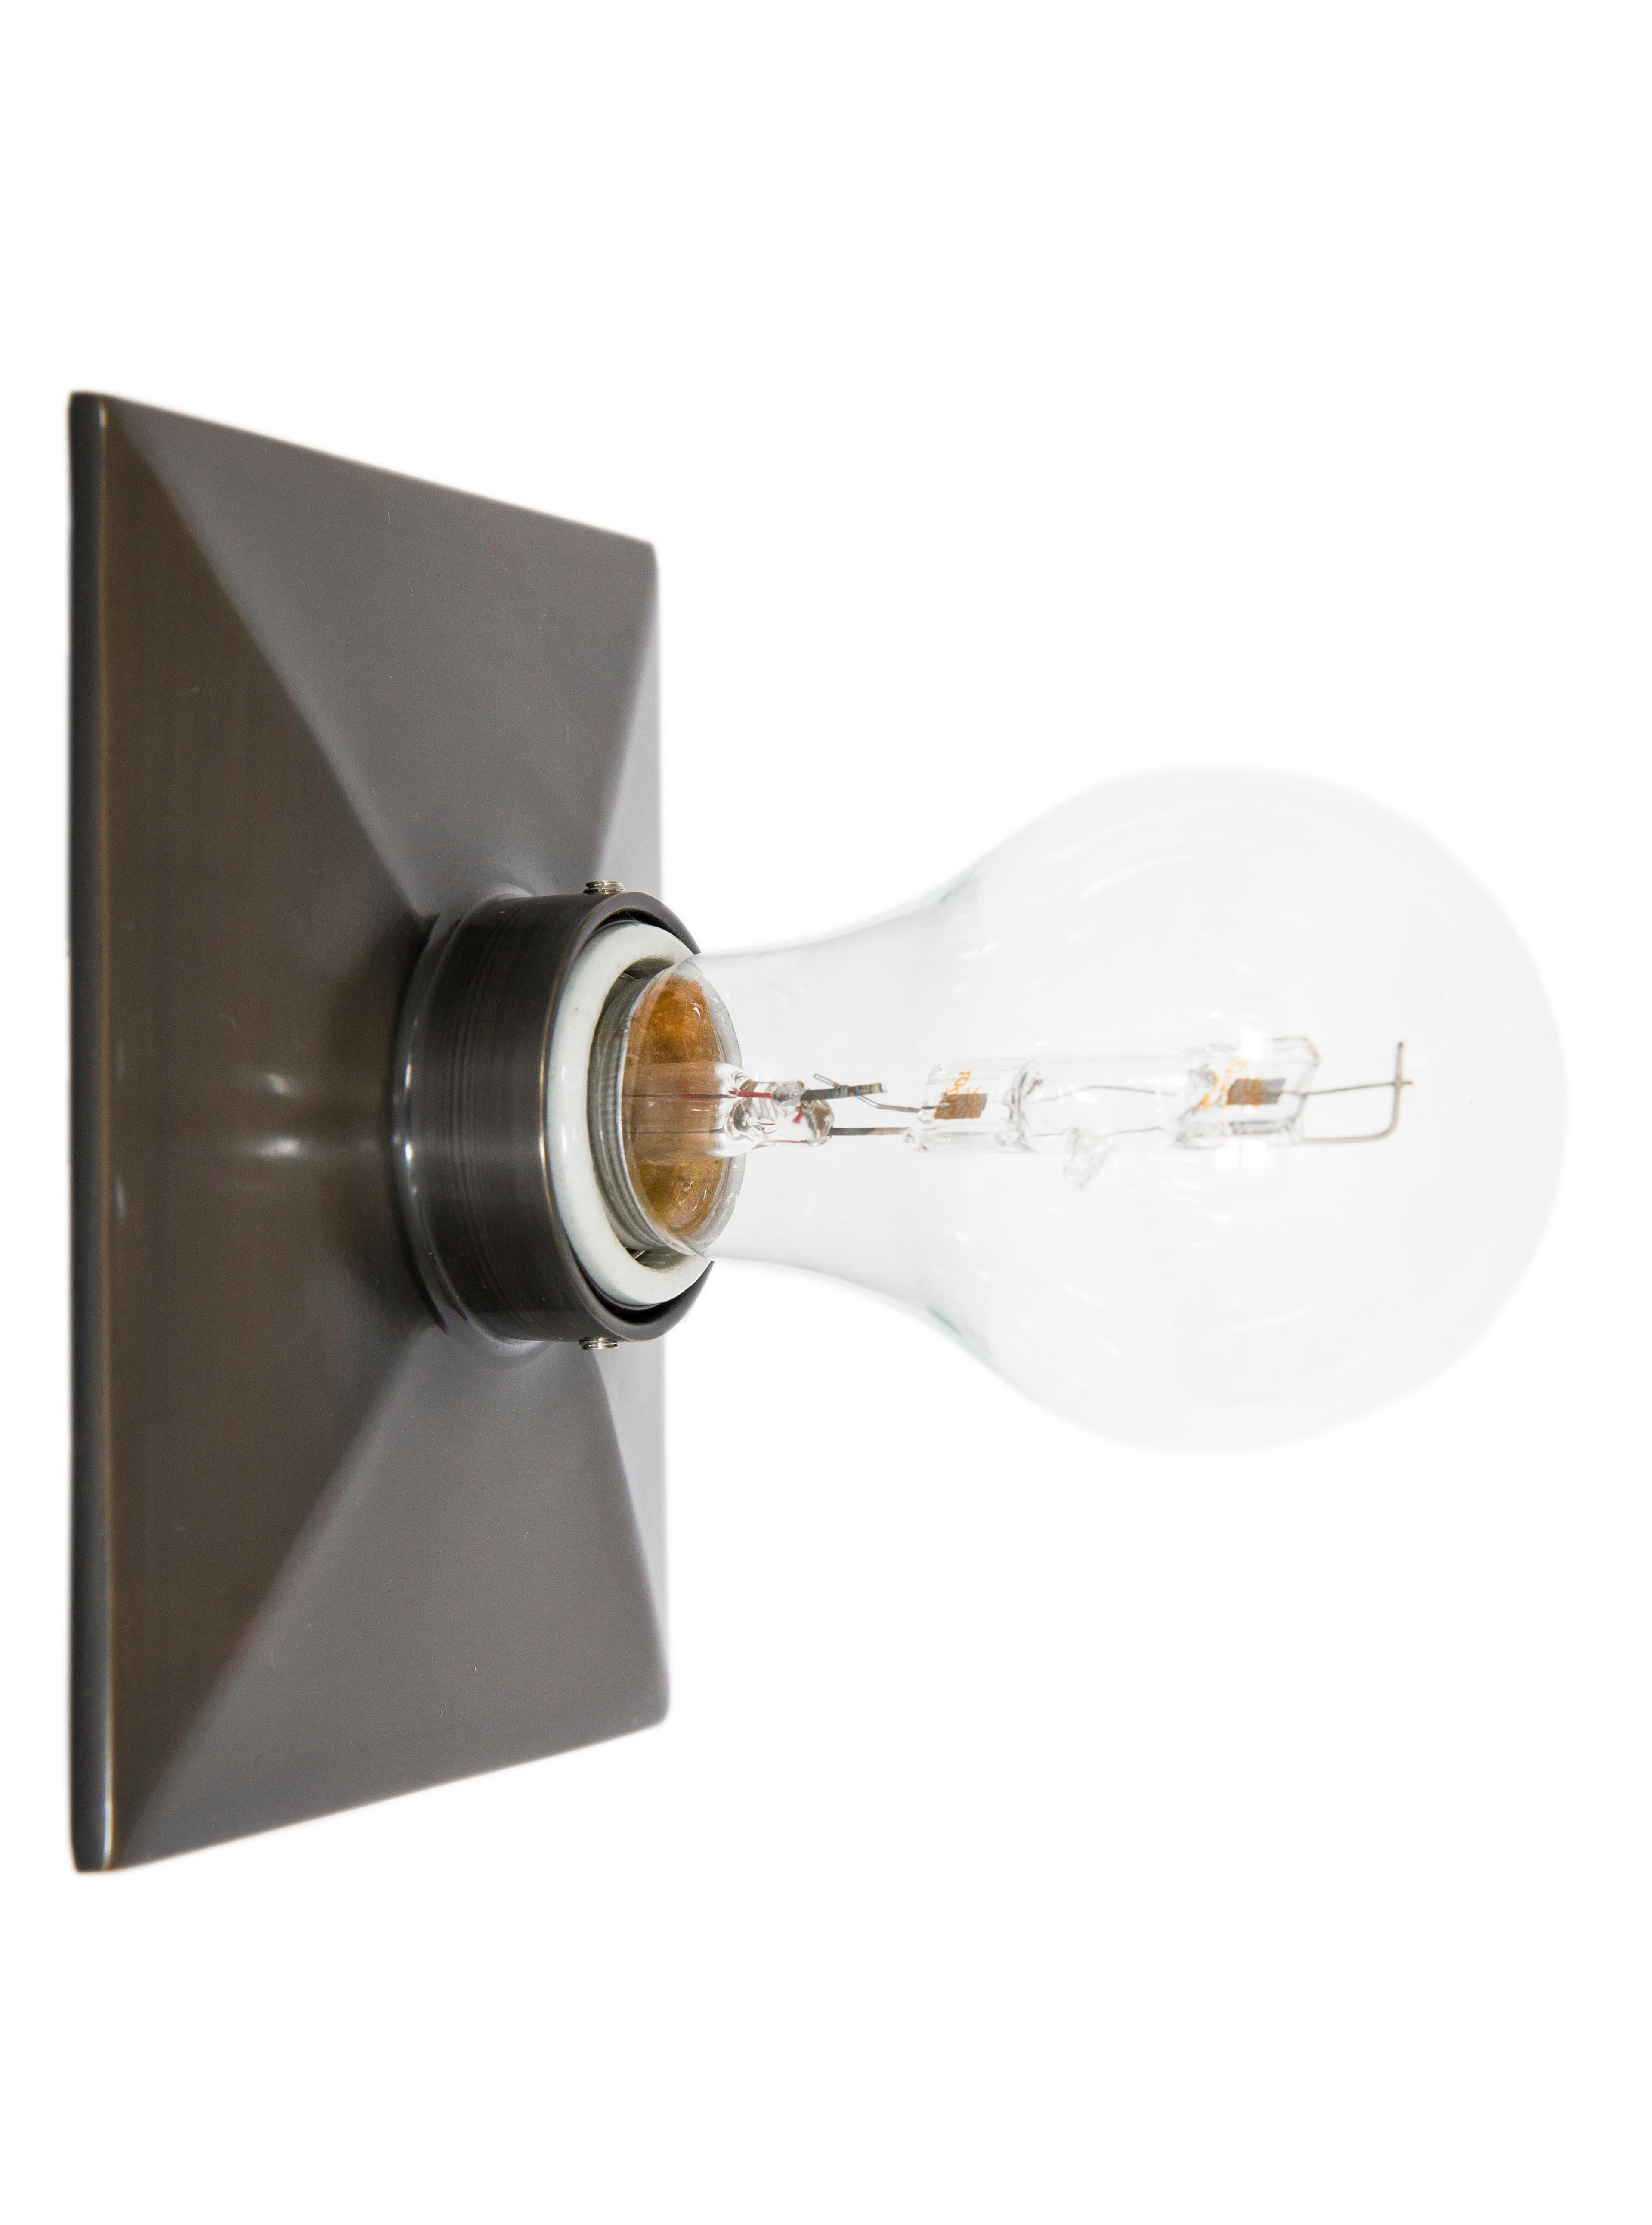 Die Vica Light ist eine rechteckige Metallgussplatte mit abgeschrägter Kante und Porzellanfassung.  Die Leuchte kann an der Wand oder an der Decke montiert werden. 

Die maximale Wattzahl der empfohlenen Glühbirne beträgt 60 W. Die Vica Light ist